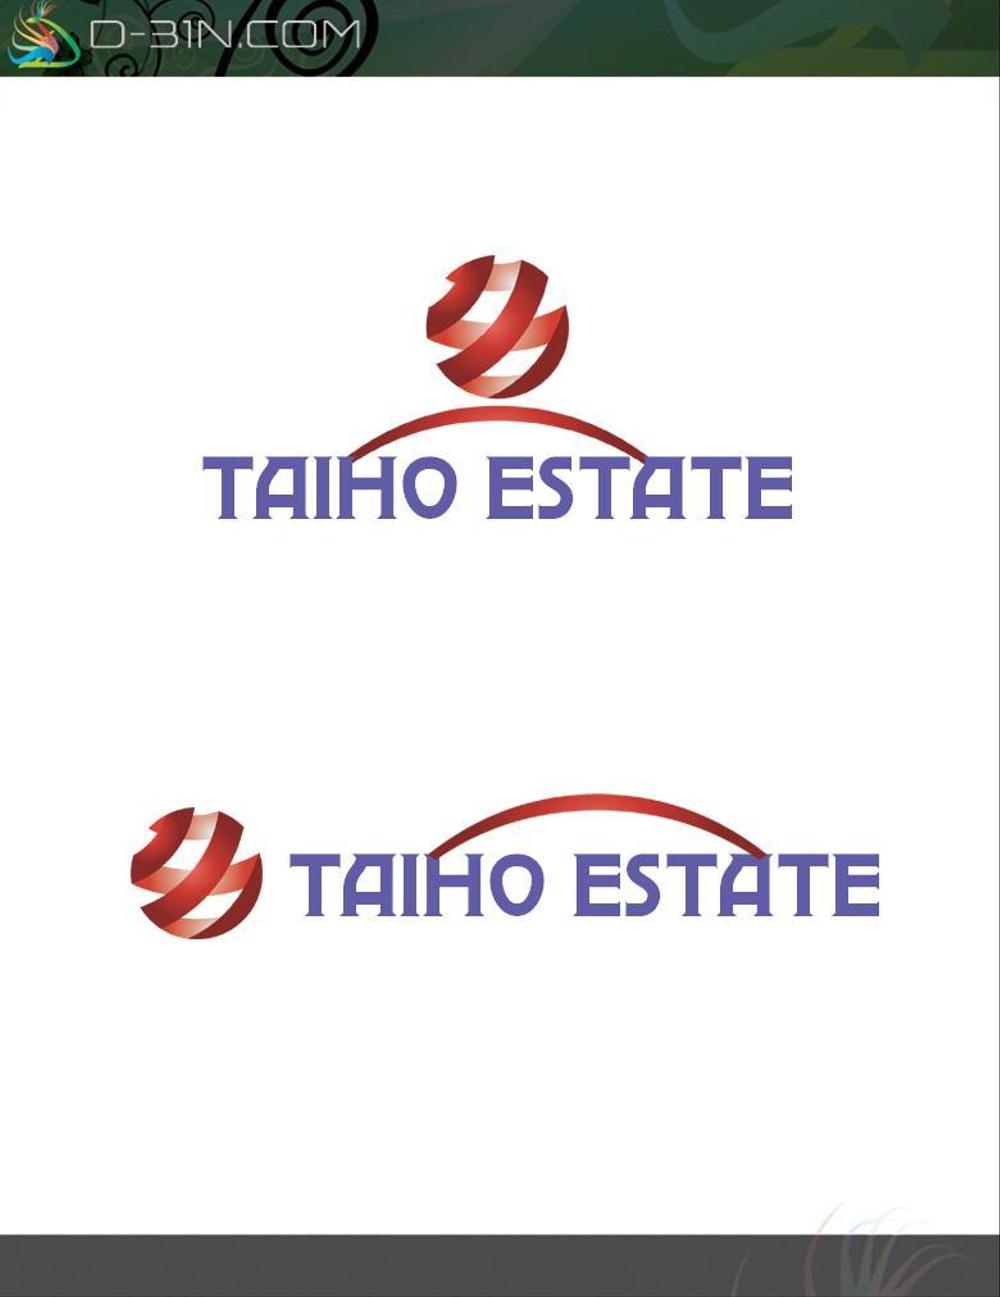 taiho_estate-logo01.jpg